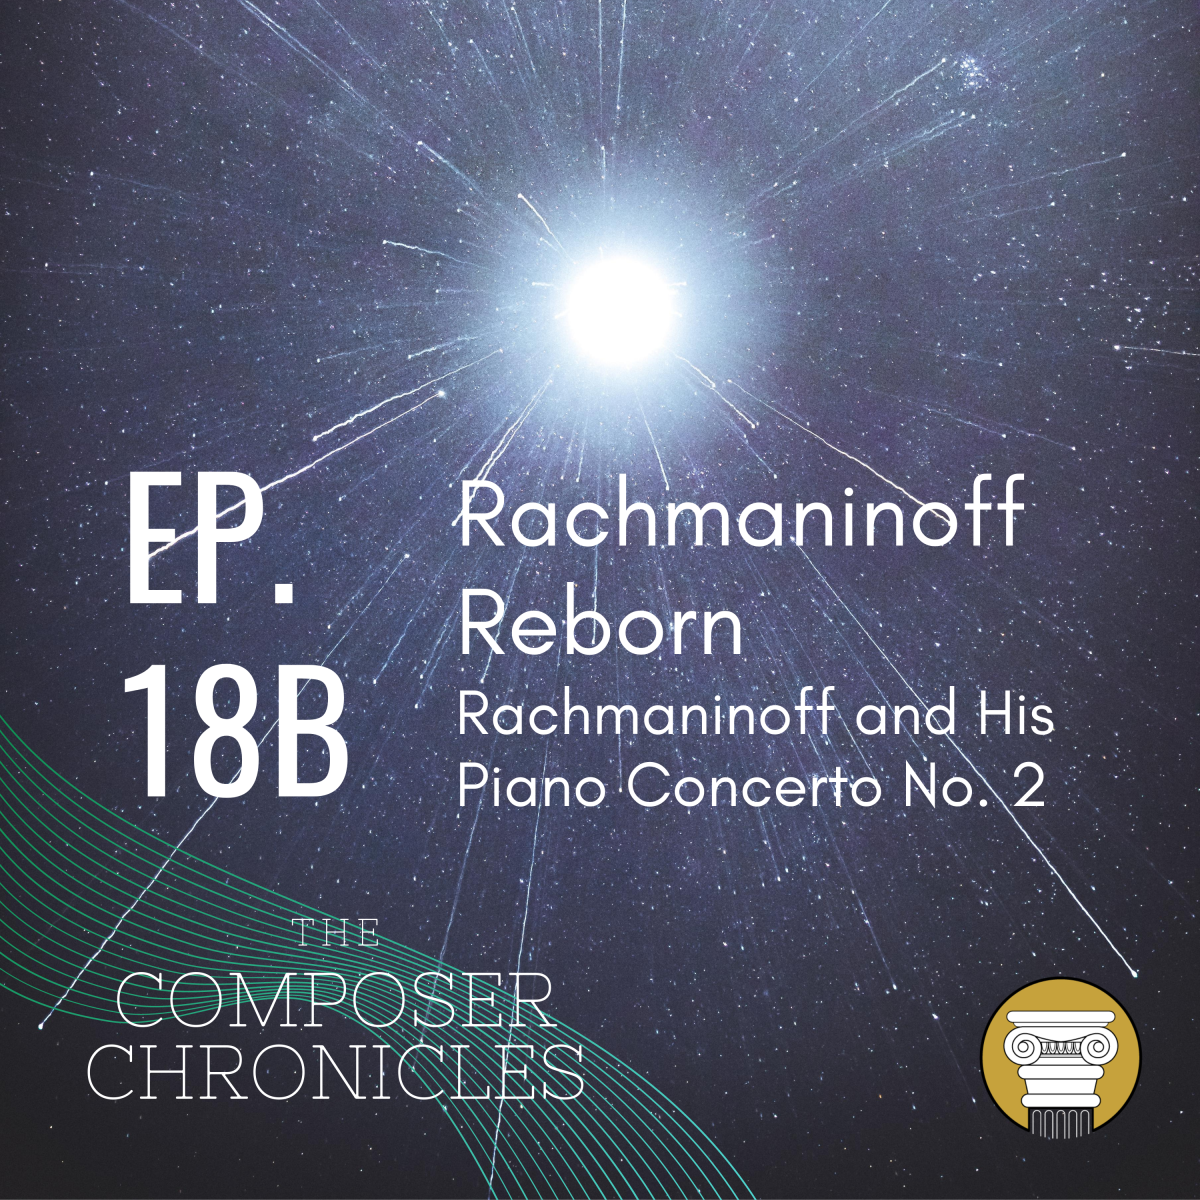 Ep. 18B: Rachmaninoff Reborn – Rachmaninoff and His Piano Concerto No. 2